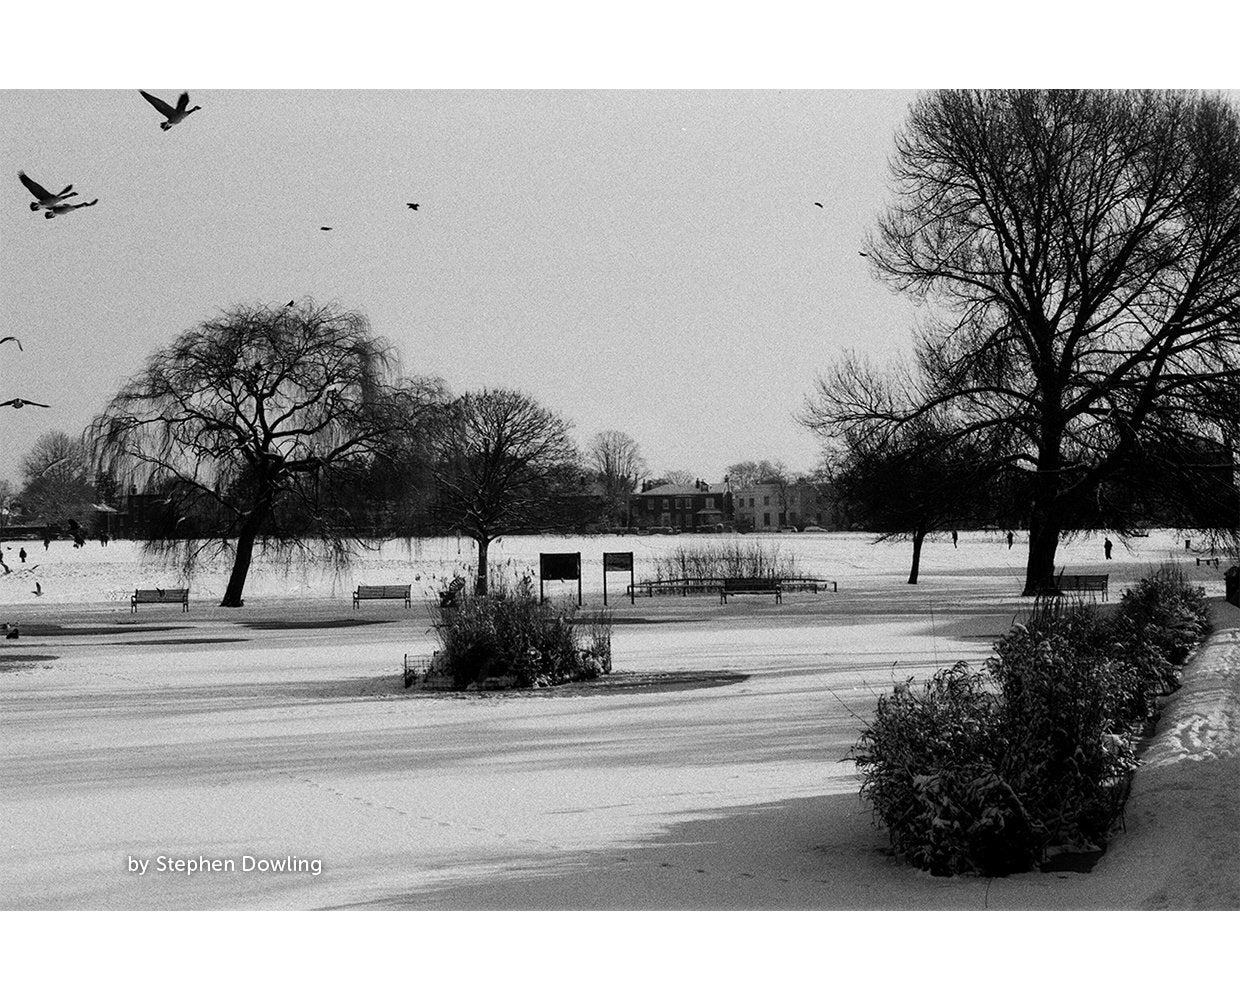 Kosmo Foto Mono 100 35mm Black and White Film